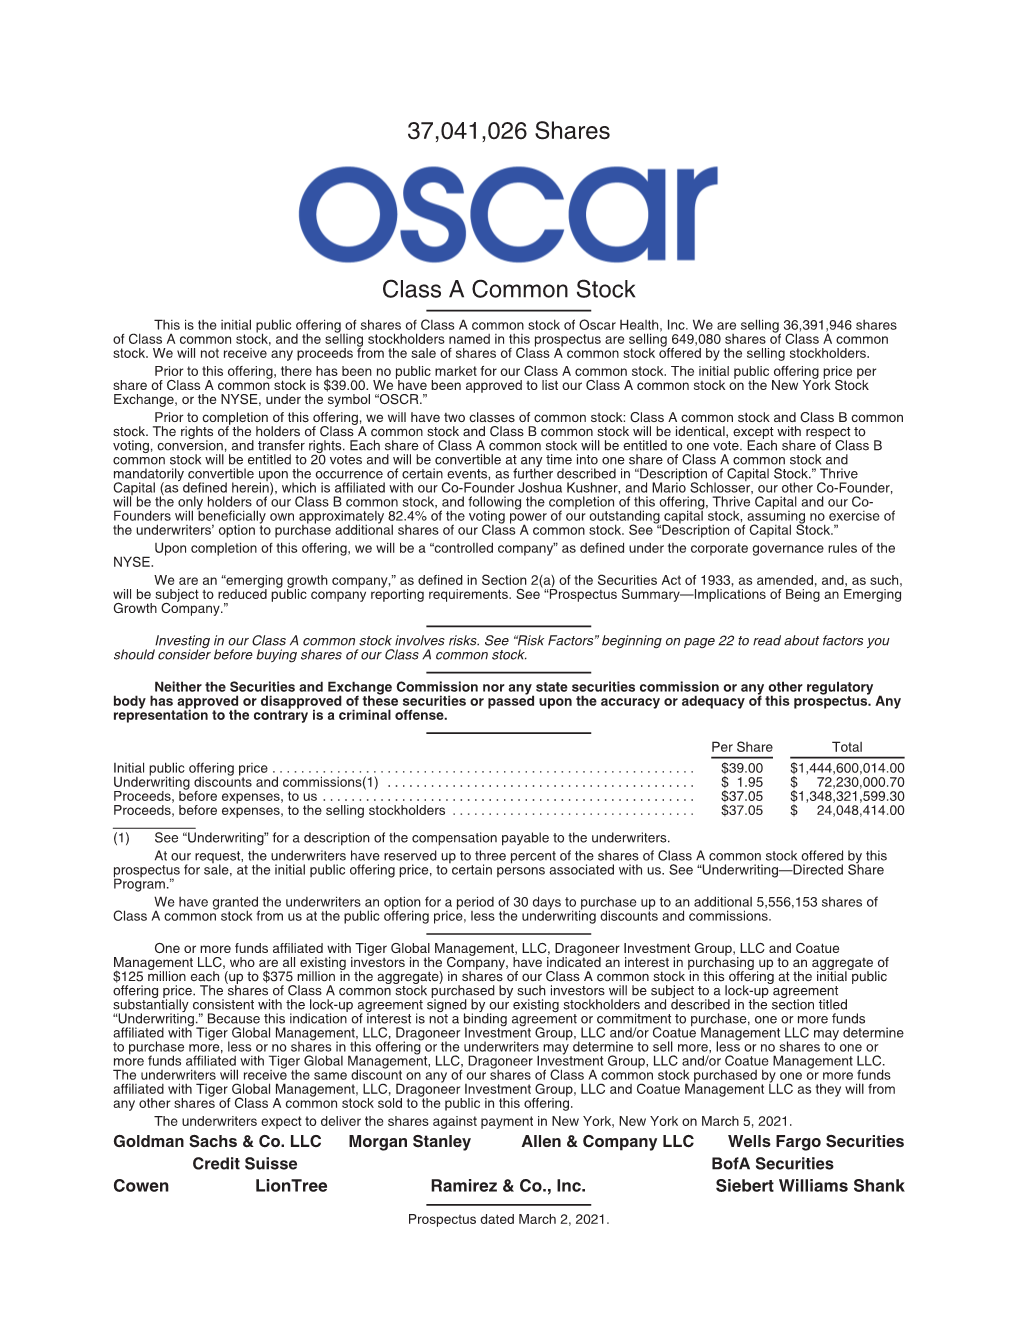 Oscar Health, Inc